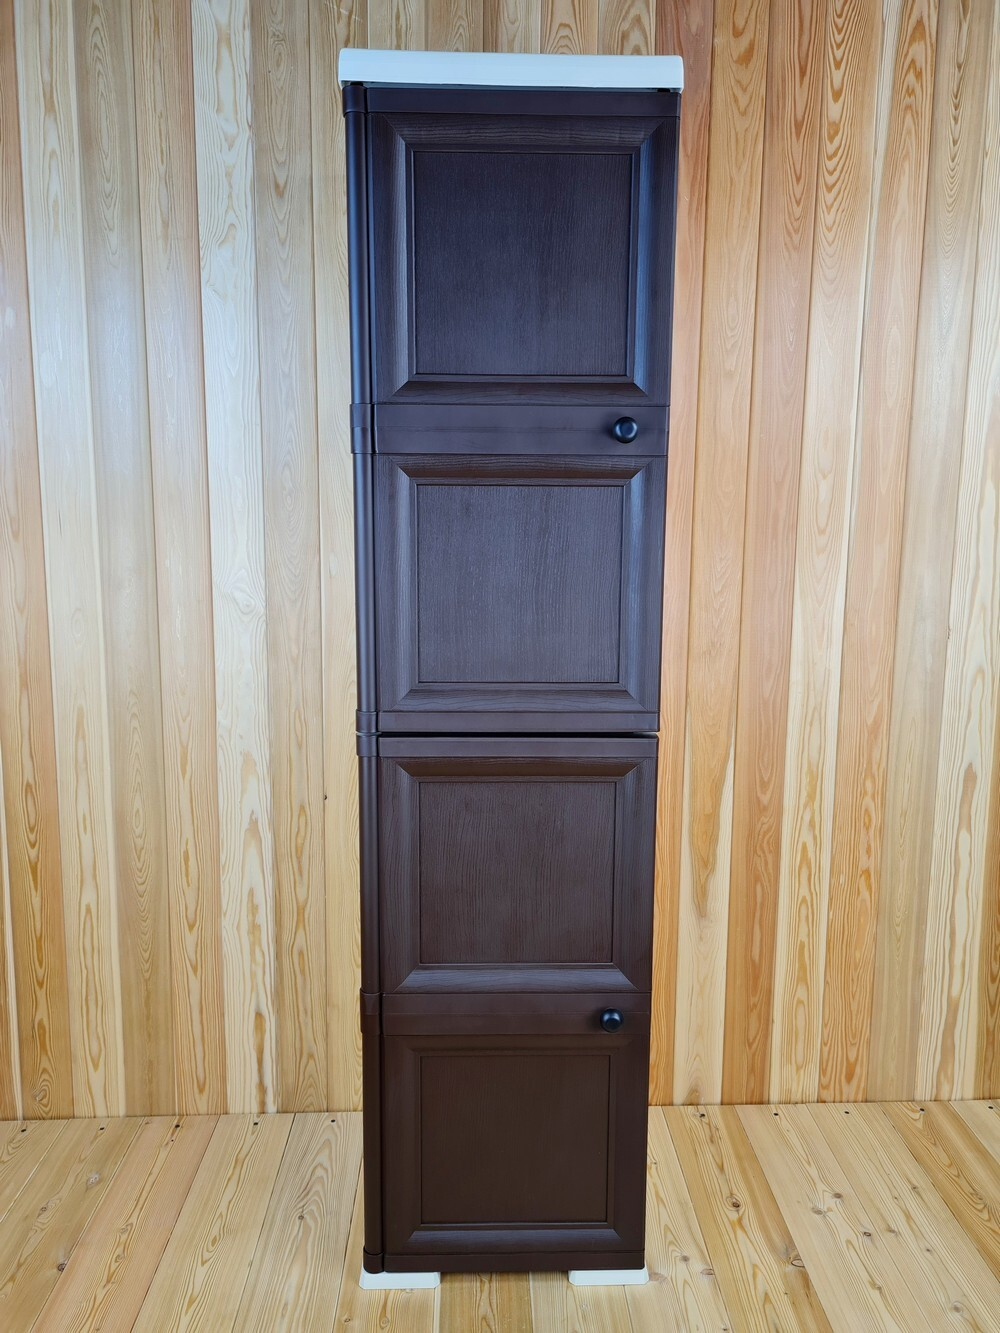 Шкаф высокий, с усиленными рёбрами жёсткости "УЮТ", 40,5х42х161,5 h, 2 сплошных дверцы. Цвет: Бежево-коричневый. Арт: Э-040-БД